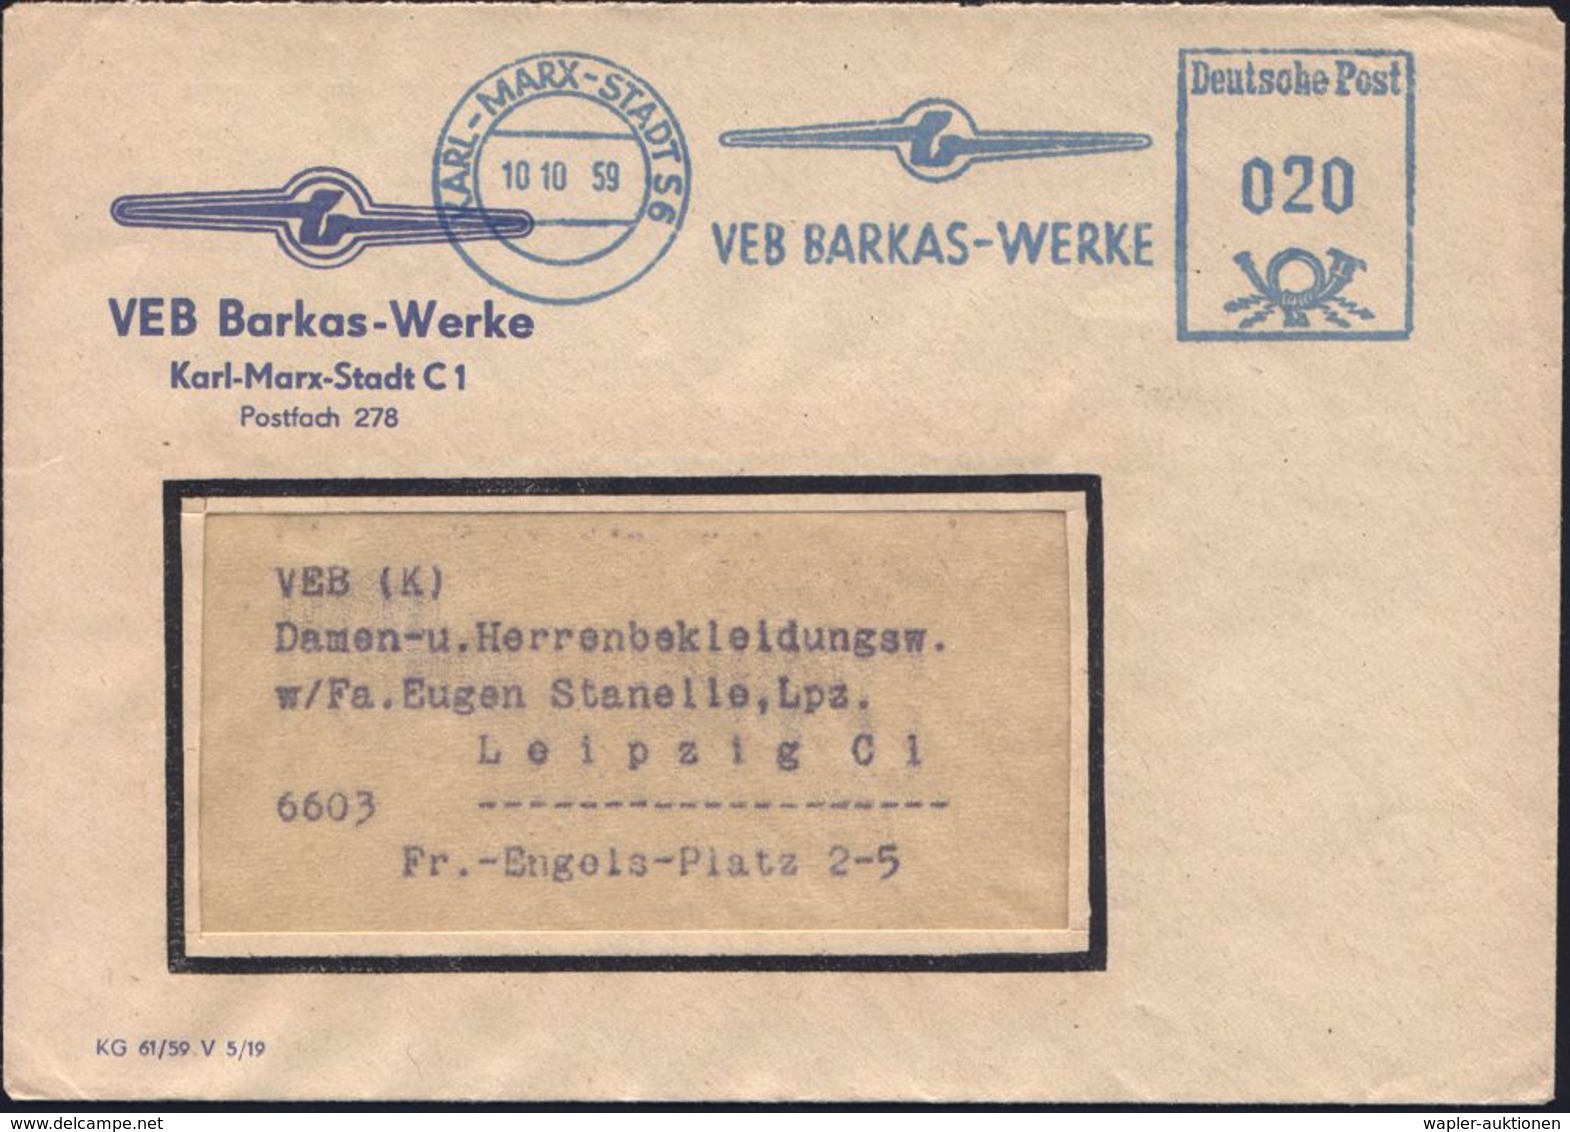 KARL-MARX-STADT S6/ VEB BARKAS-WERKE 1959 (10.10.) Blauer AFS = Firmen-Logo (blau = DDR-Dienstfarbe) = Hersteller: Klein - Voitures